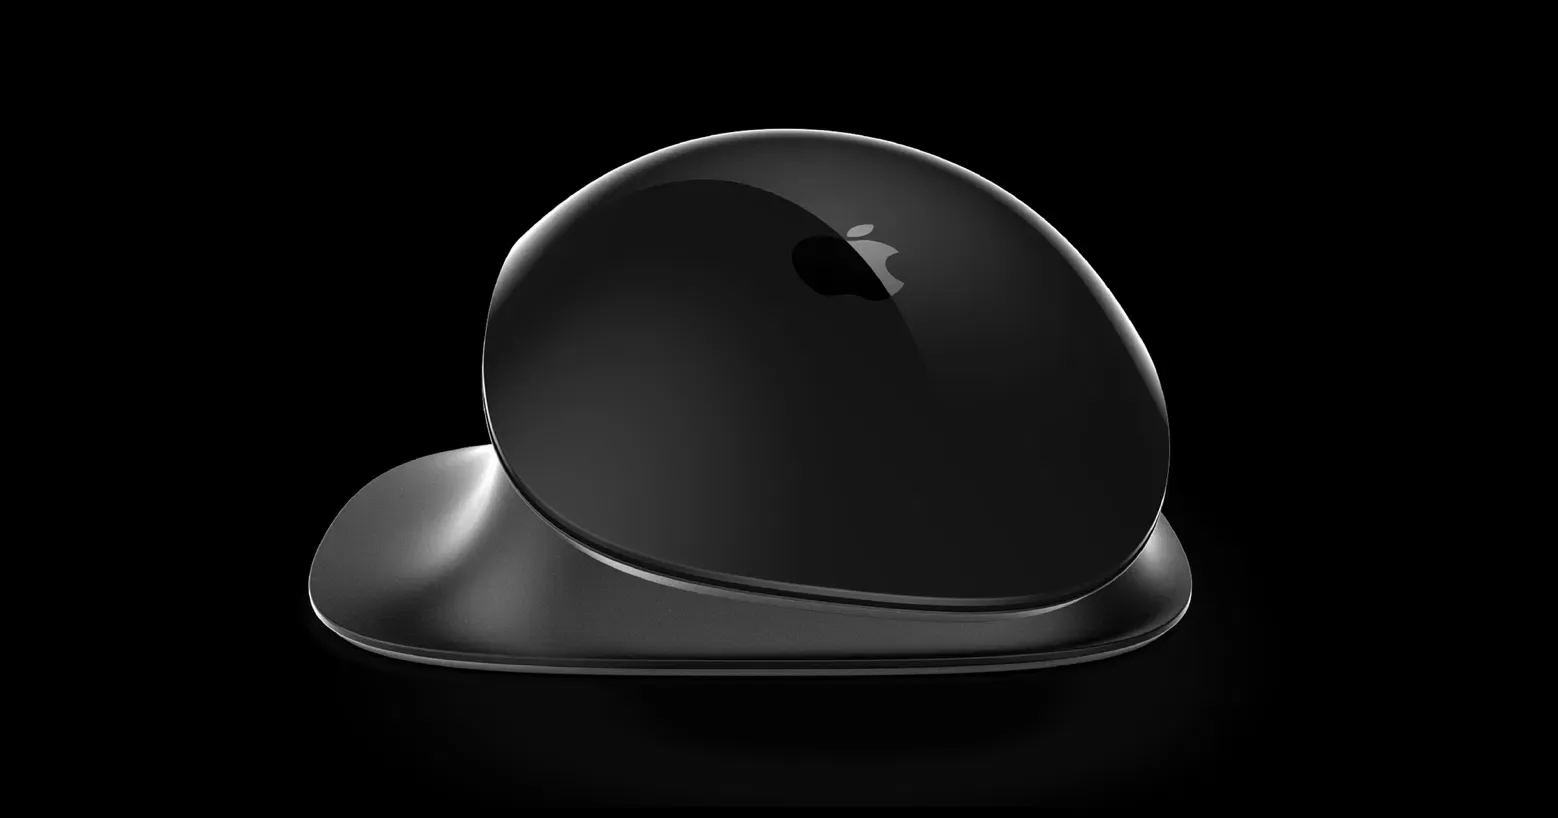 Дизайнер предложил концепт эргономичной Apple Pro Mouse с Taptic Engine